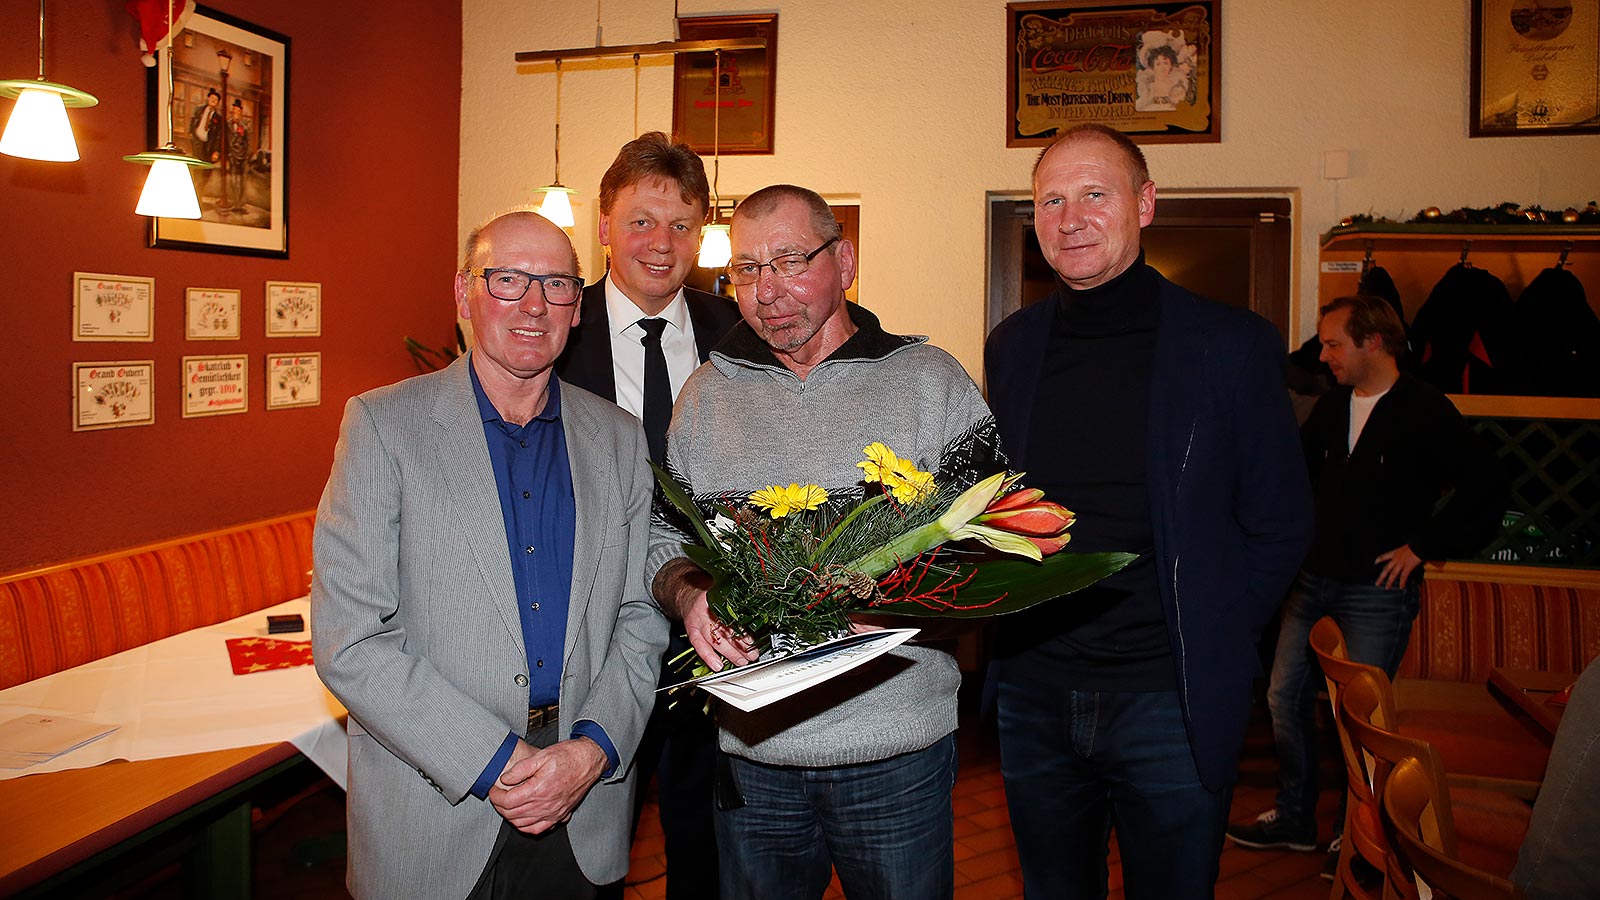 Erhielt die Ehrenamtsmedaille: Dieter Voigt vom BSV Schönau. (Foto: Dirk Knofe/Sportbuzzer)